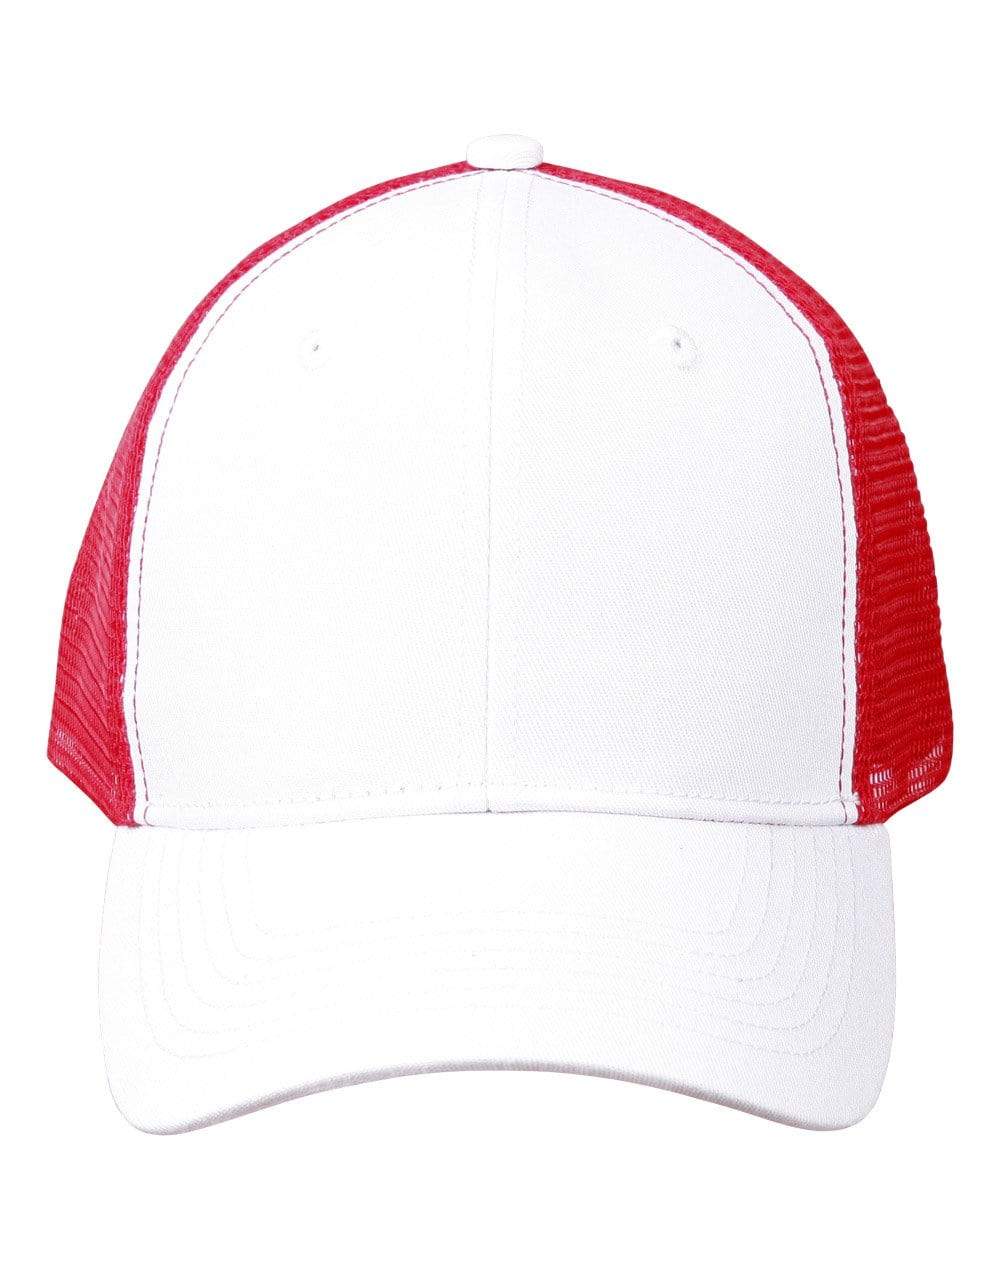 Winning Spirit Active Wear White/Red / One size Premium Cotton Trucker Cap Ch89